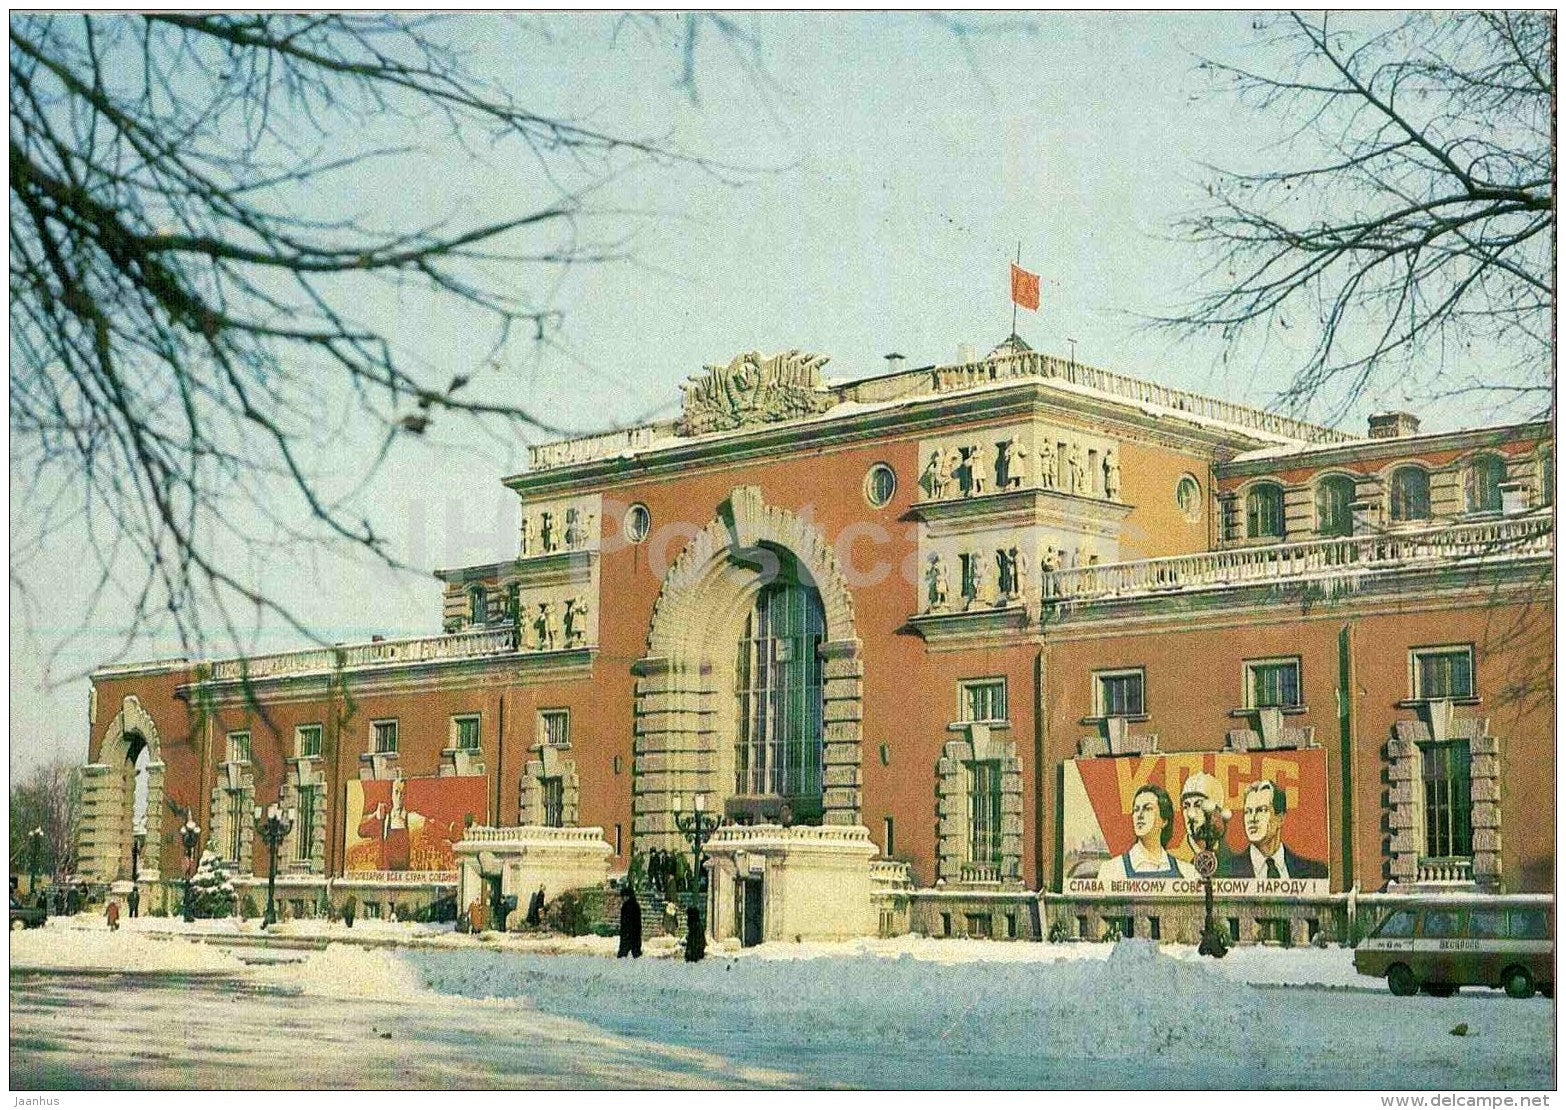 Railway station - Kursk - 1984 - Russia USSR - unused - JH Postcards